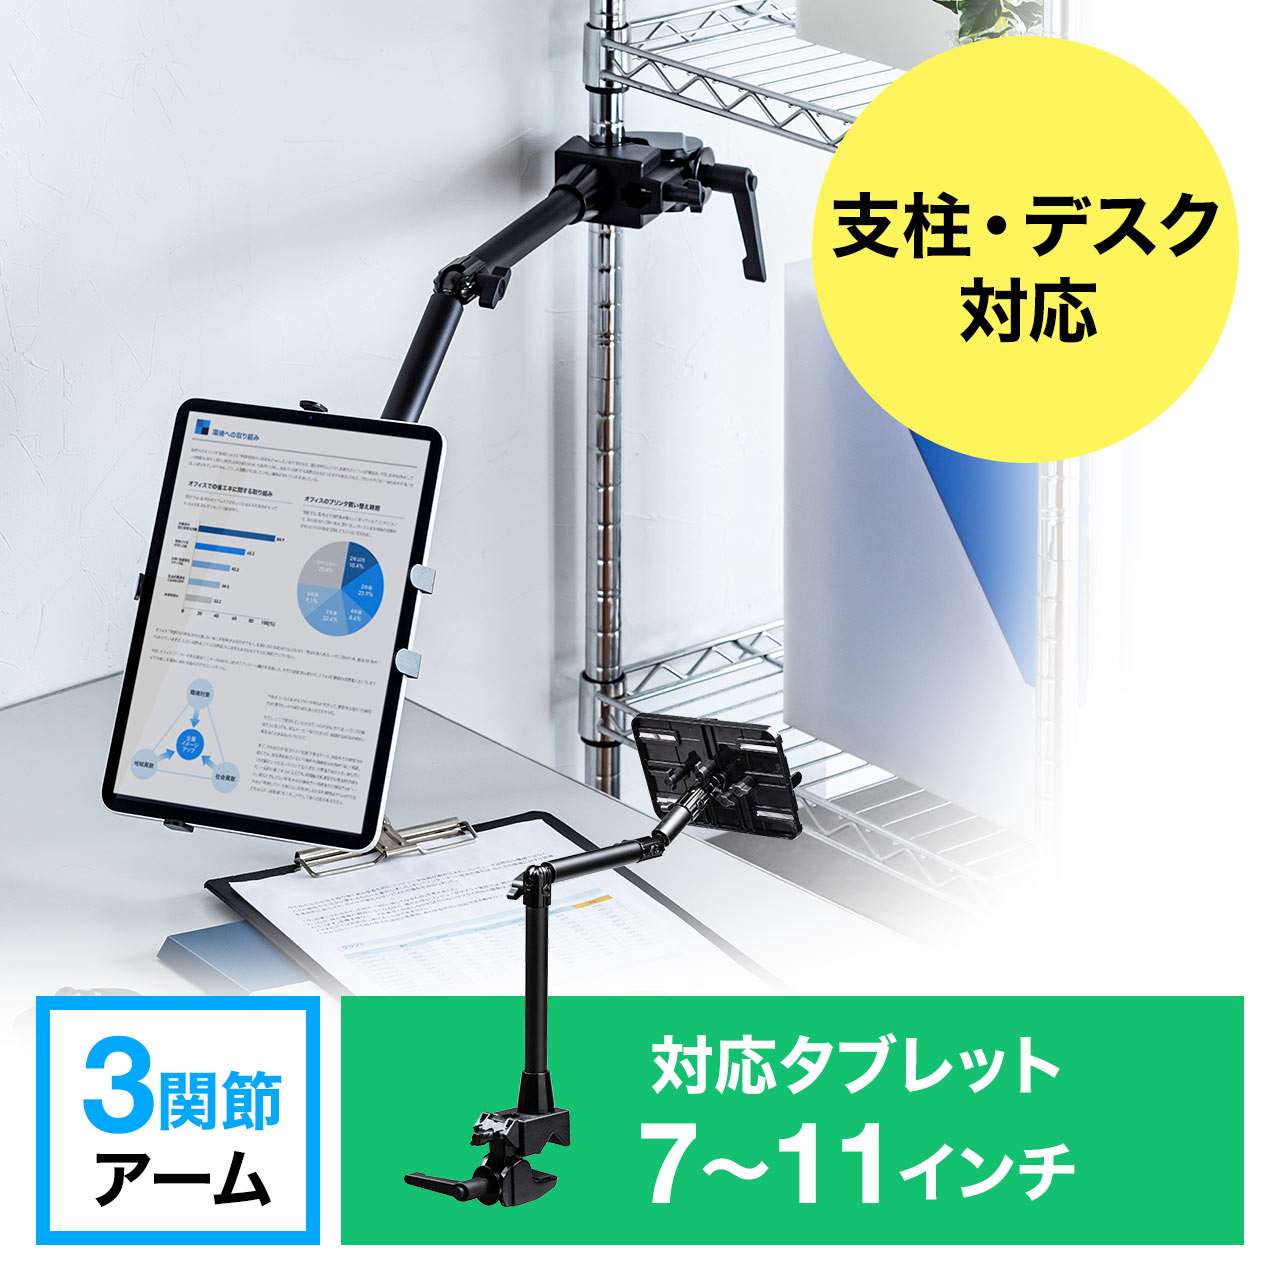 2274円 大割引 iPadアームスタンド 机 クランプ取付け用